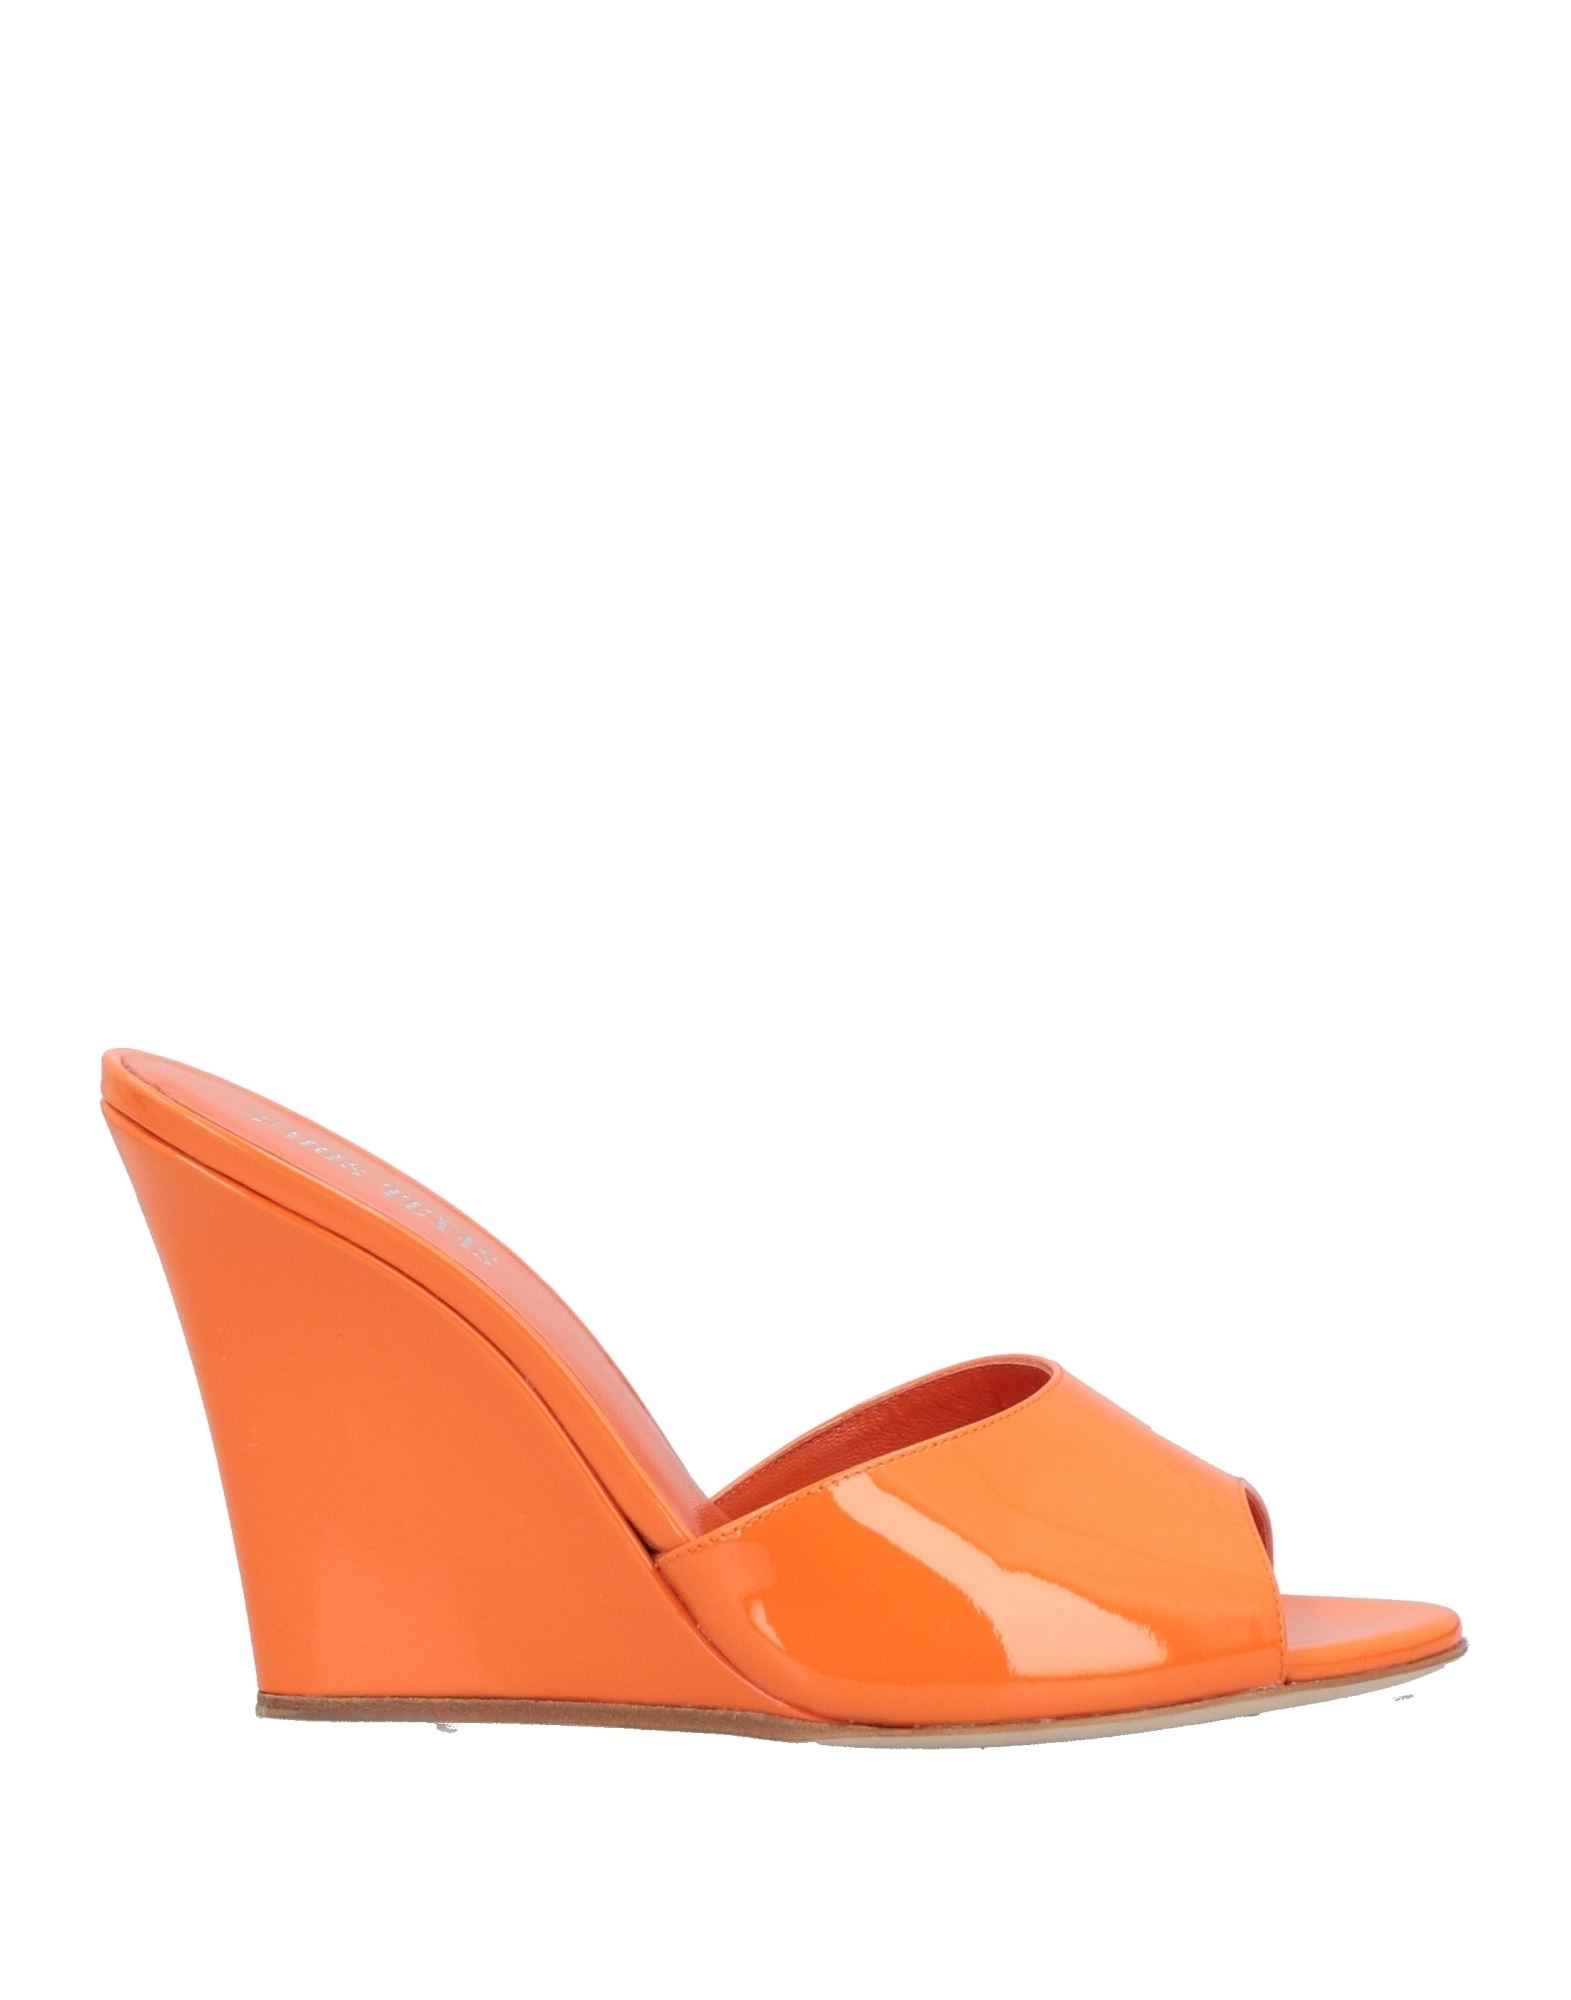 Paris Texas Sandals In Orange